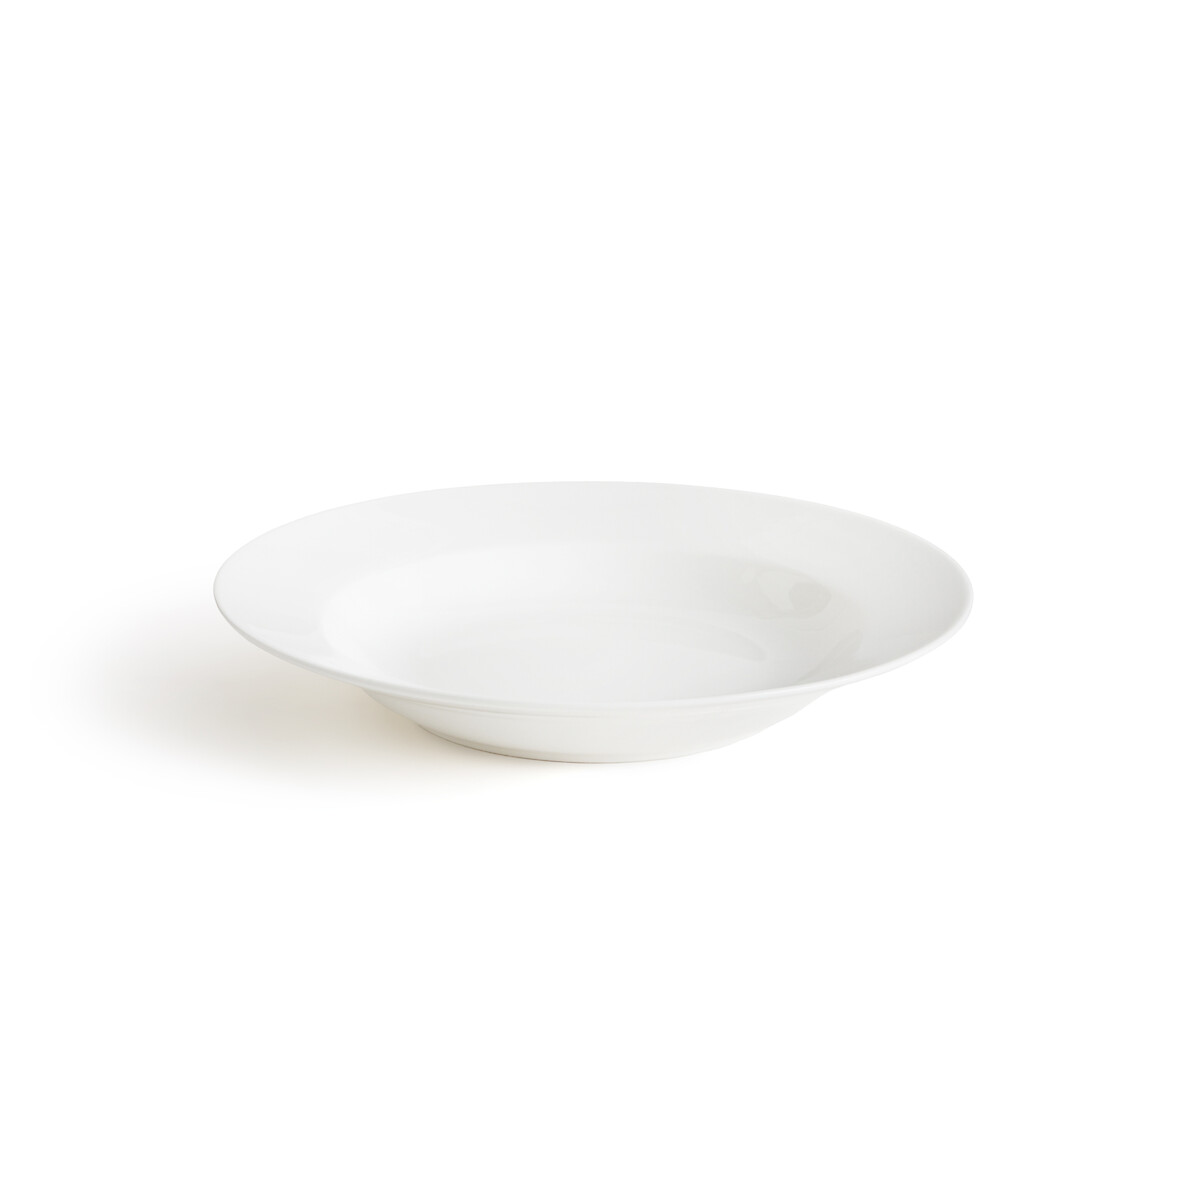 Комплект из четырех глубоких тарелок из фарфора Ginny единый размер белый салатница laredoute салатница из фарфора ginny единый размер белый